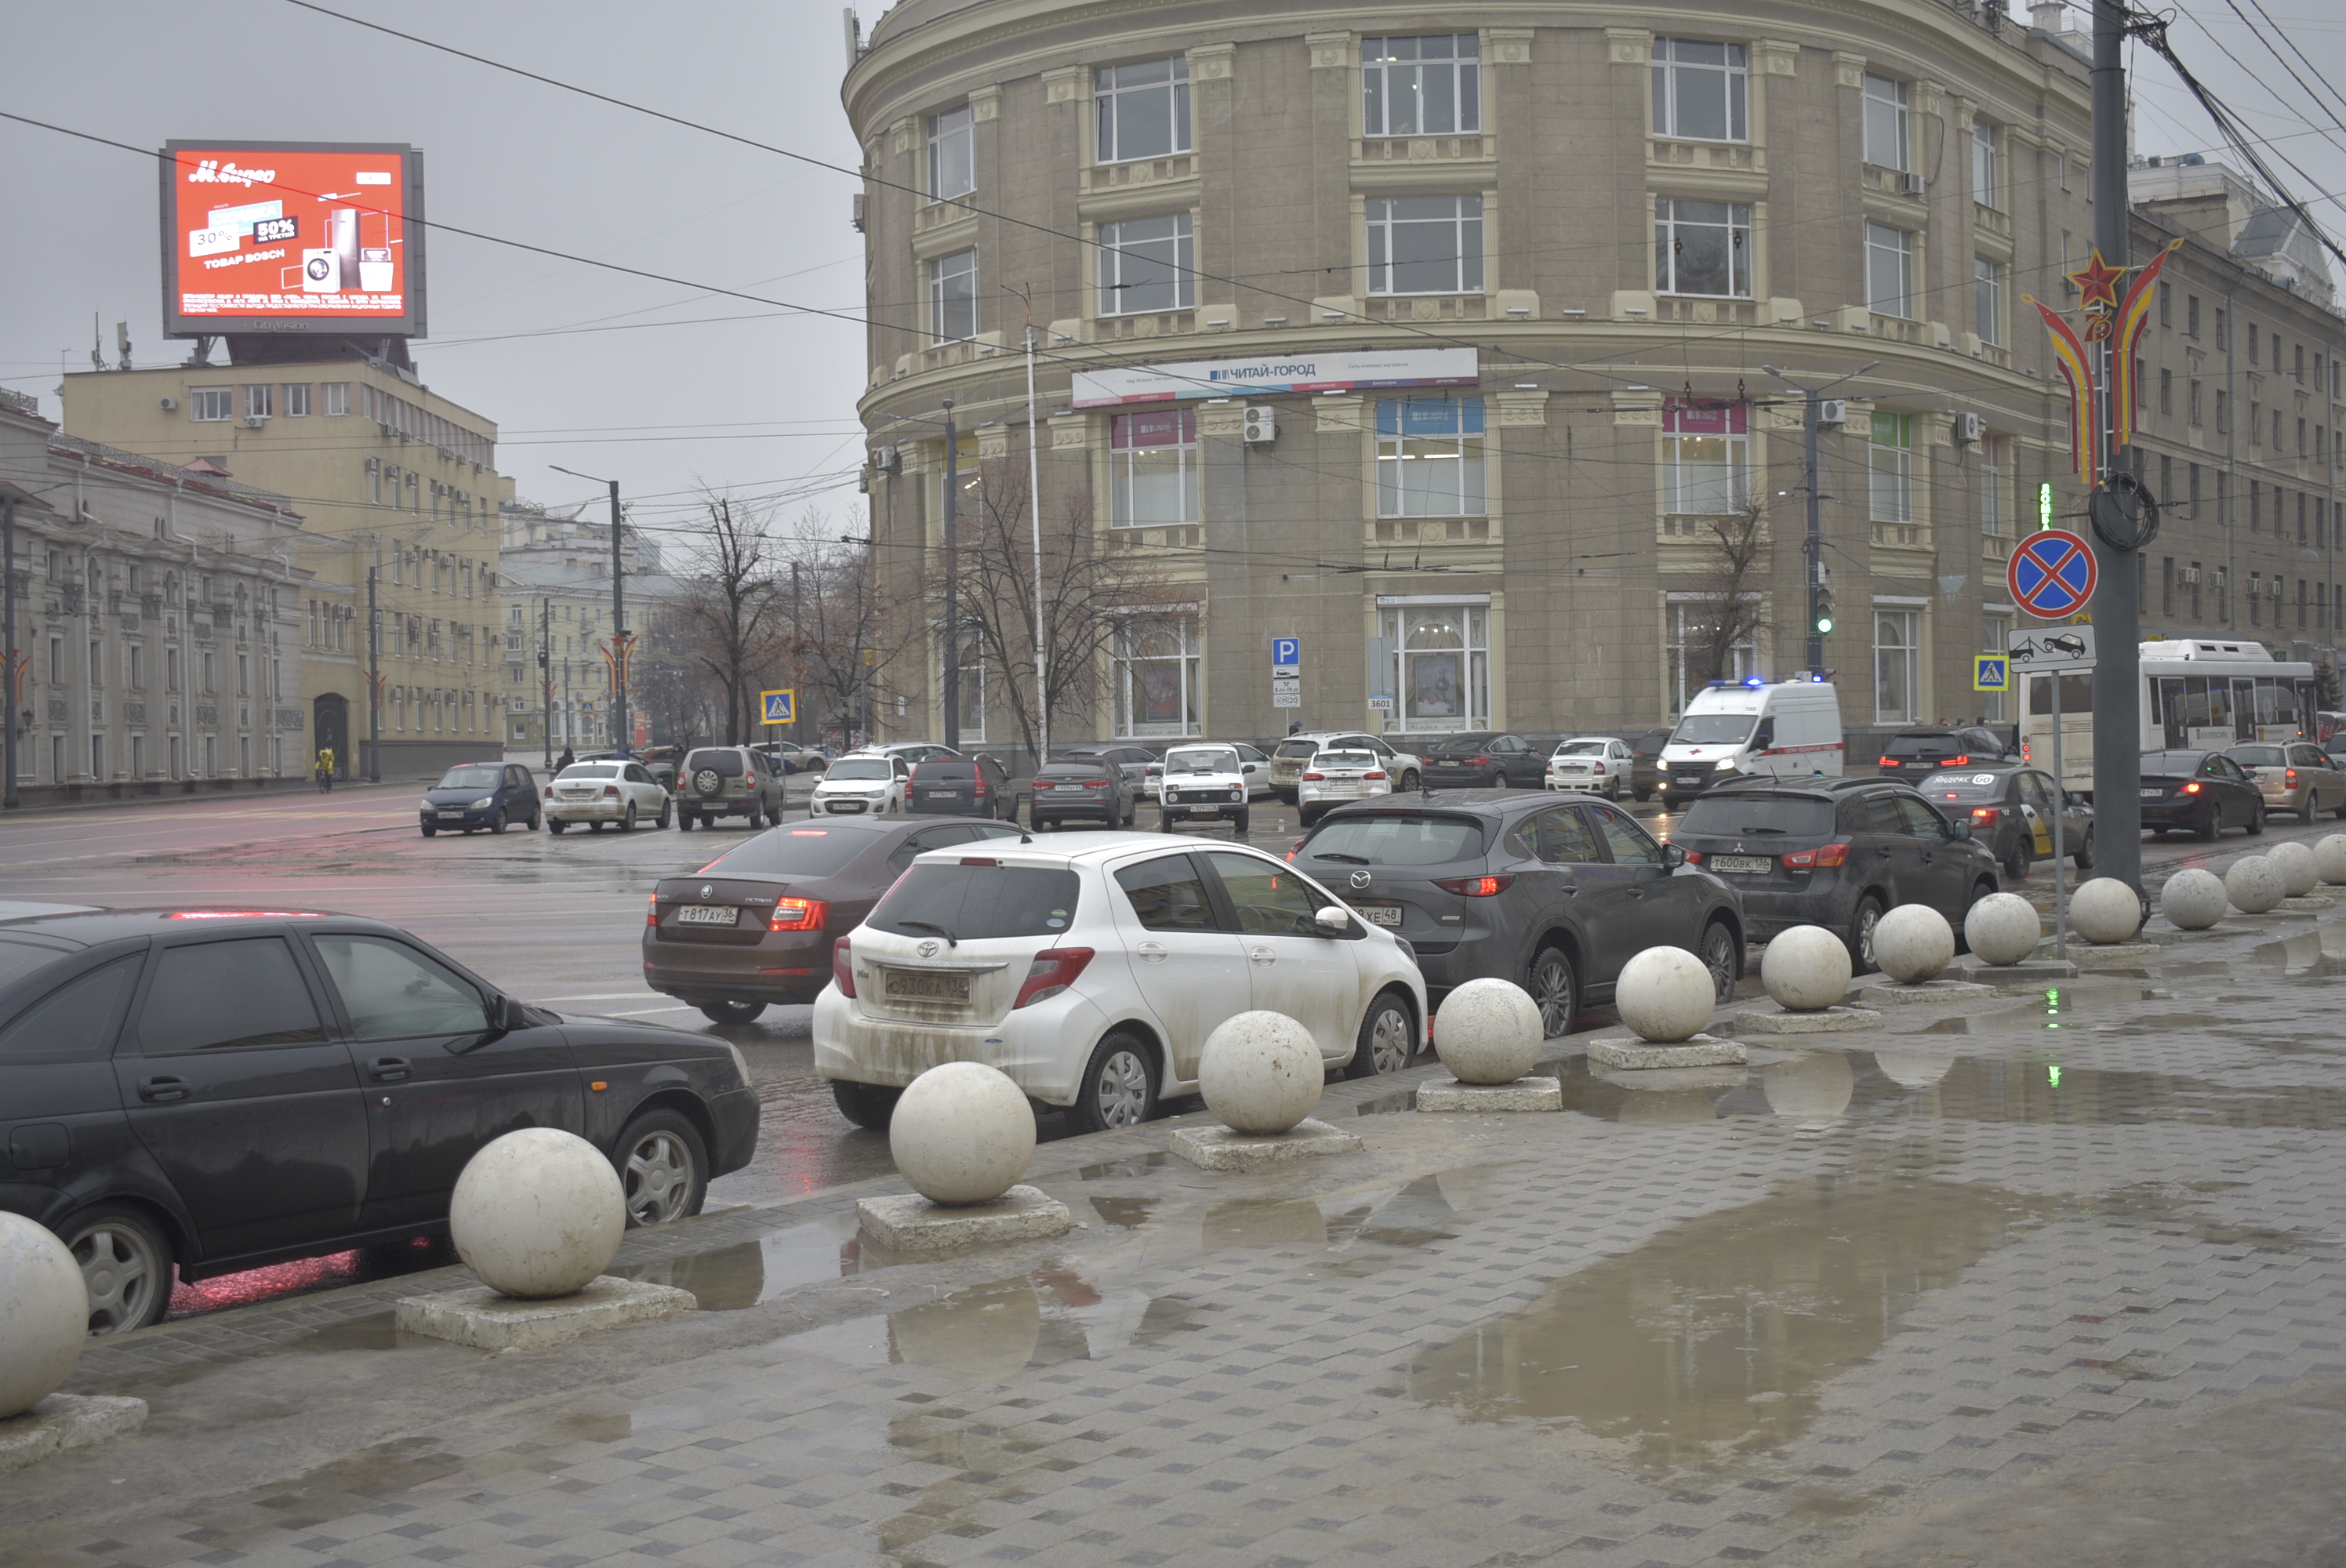 Какими методами можно решить проблему с парковками в Воронеже? - фото 2